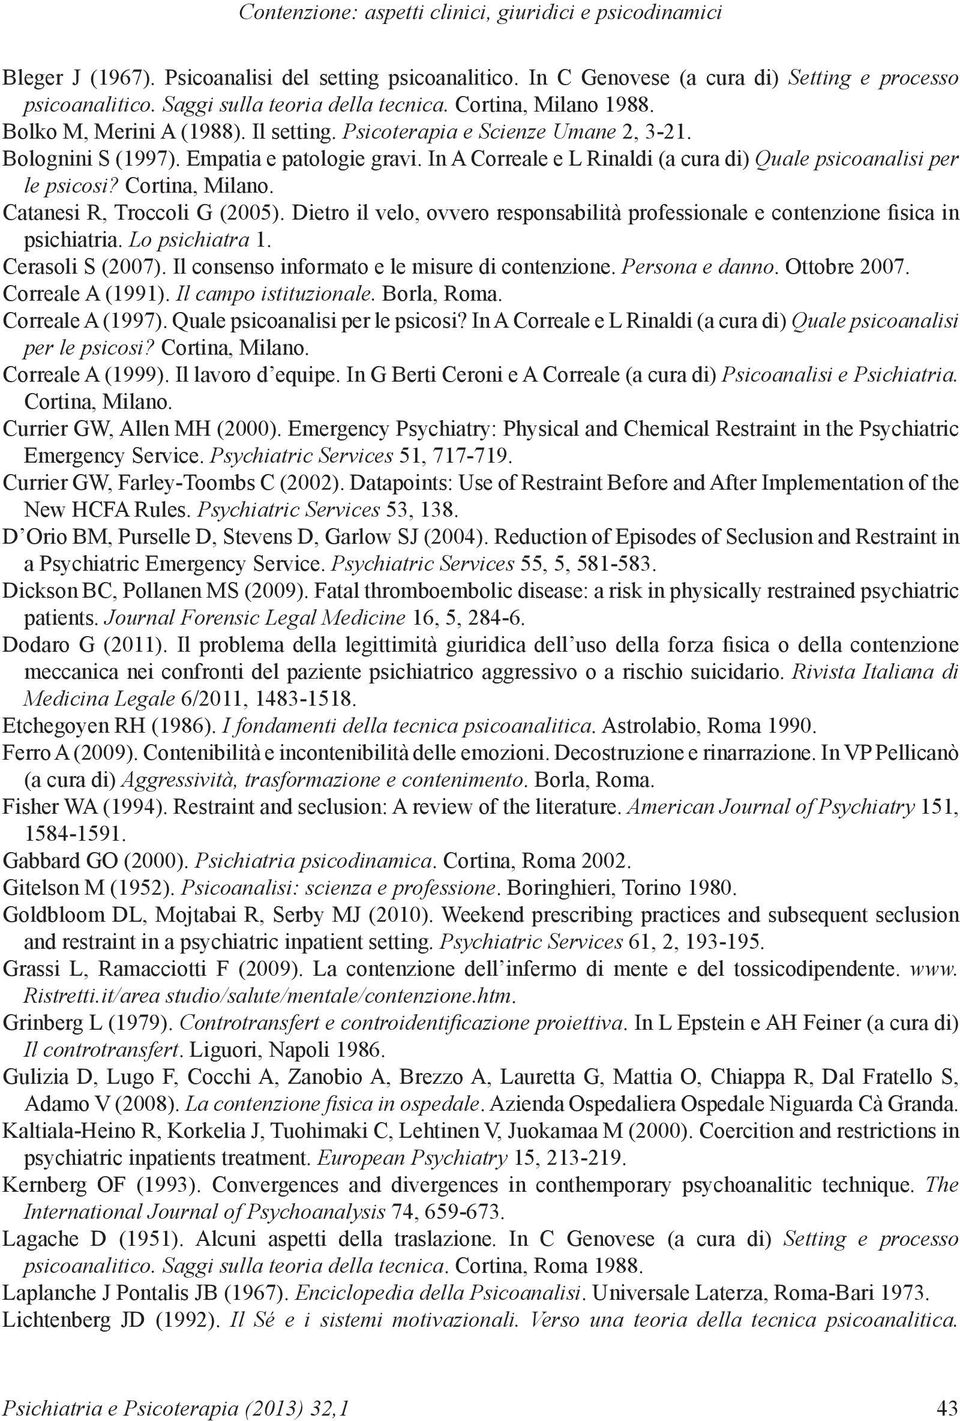 In A Correale e L Rinaldi (a cura di) Quale psicoanalisi per le psicosi? Cortina, Milano. Catanesi R, Troccoli G (2005).